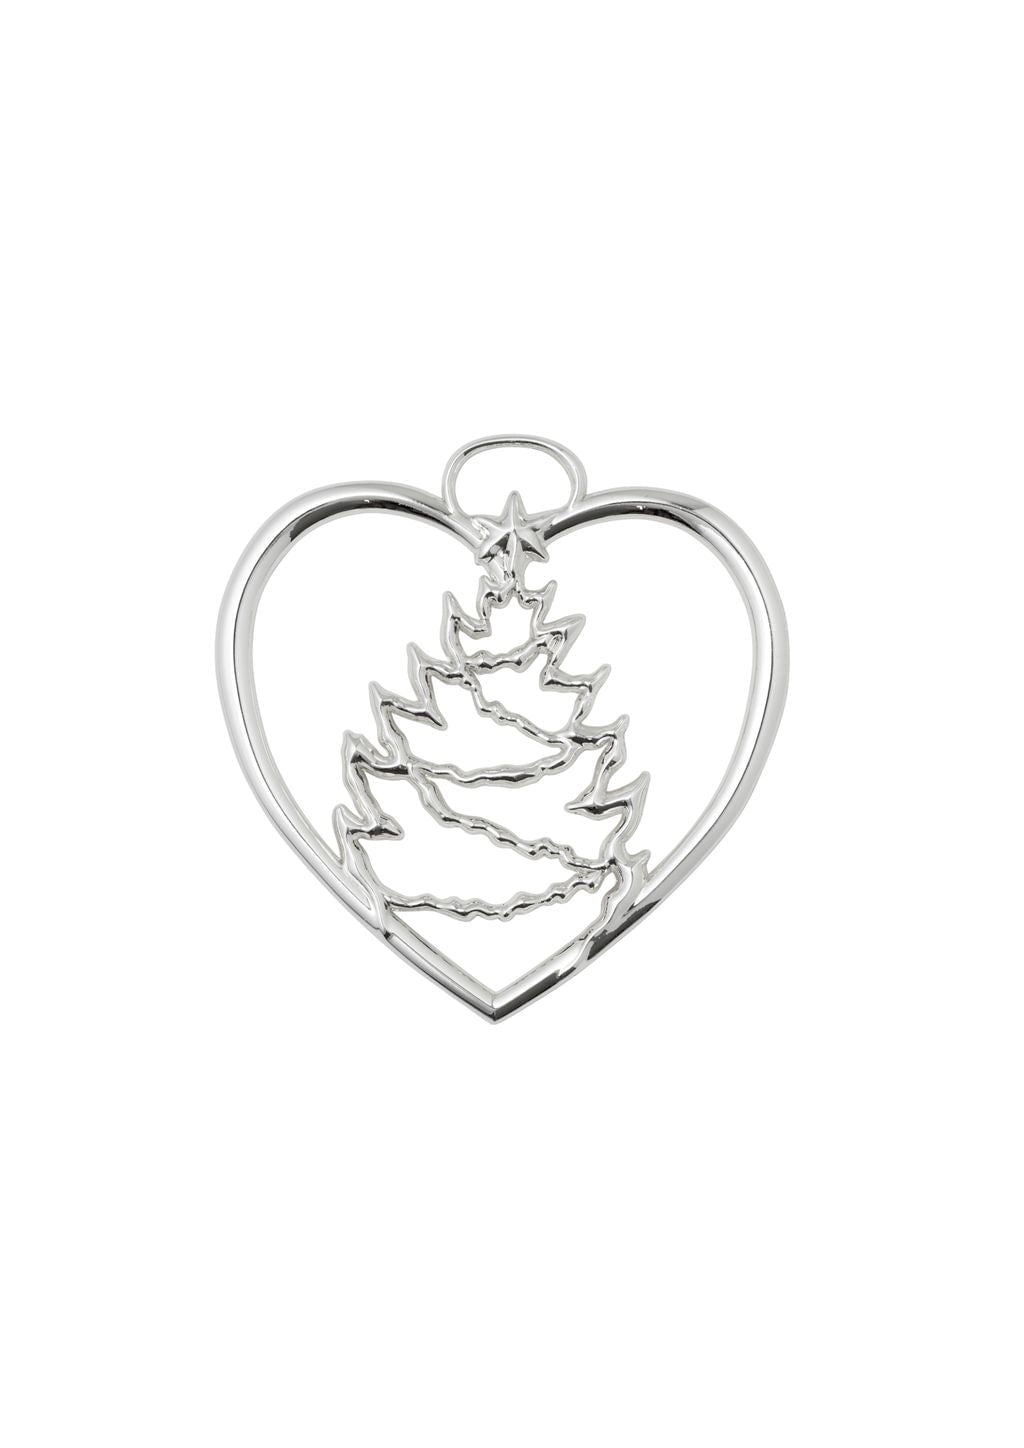 Rosendahl Karen Blixen Heart Tree Christmas H7,5 cm, argento placcato